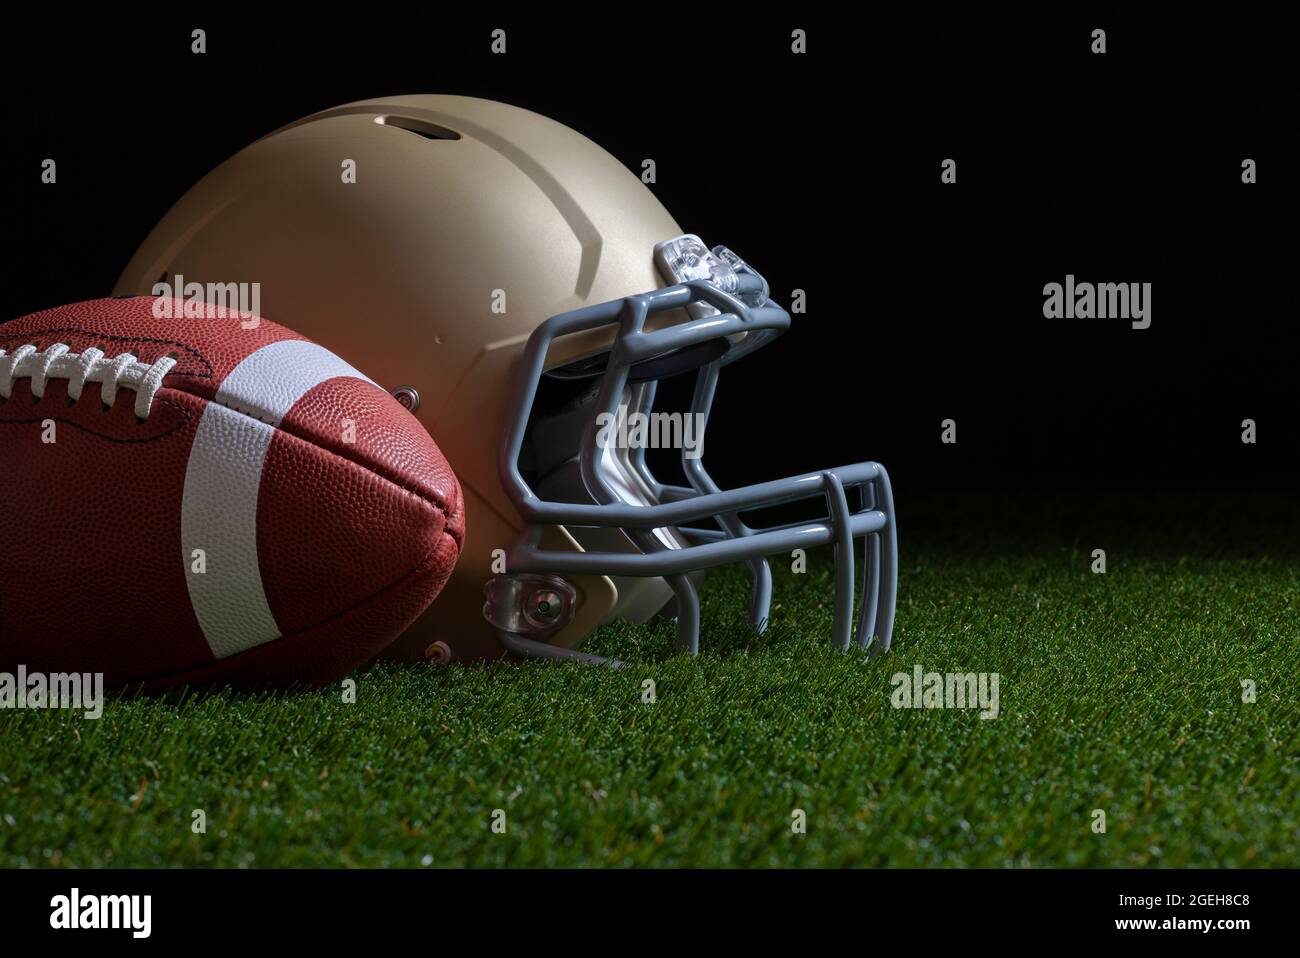 Vue basse du ballon de football et du casque doré sur l'herbe avec fond sombre Banque D'Images